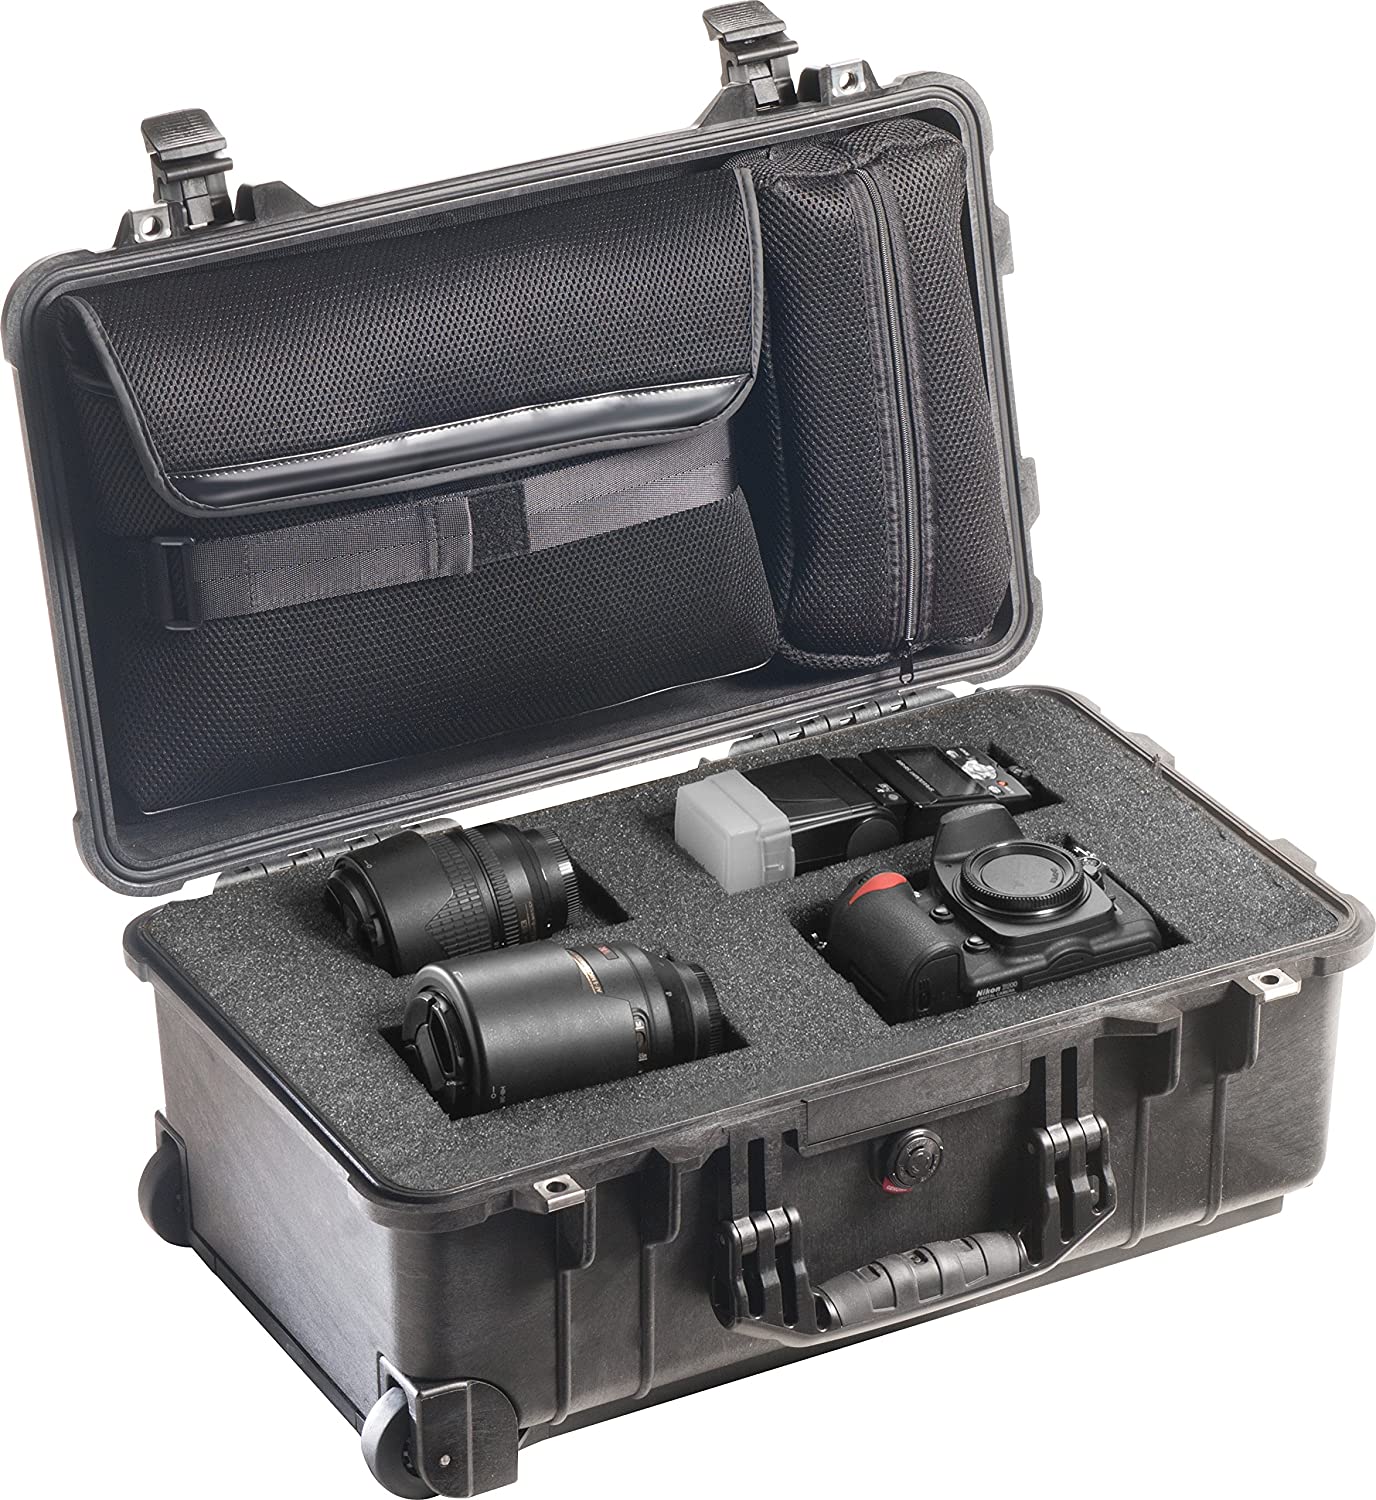 Travel friendly video camera bag- Pelican 1510